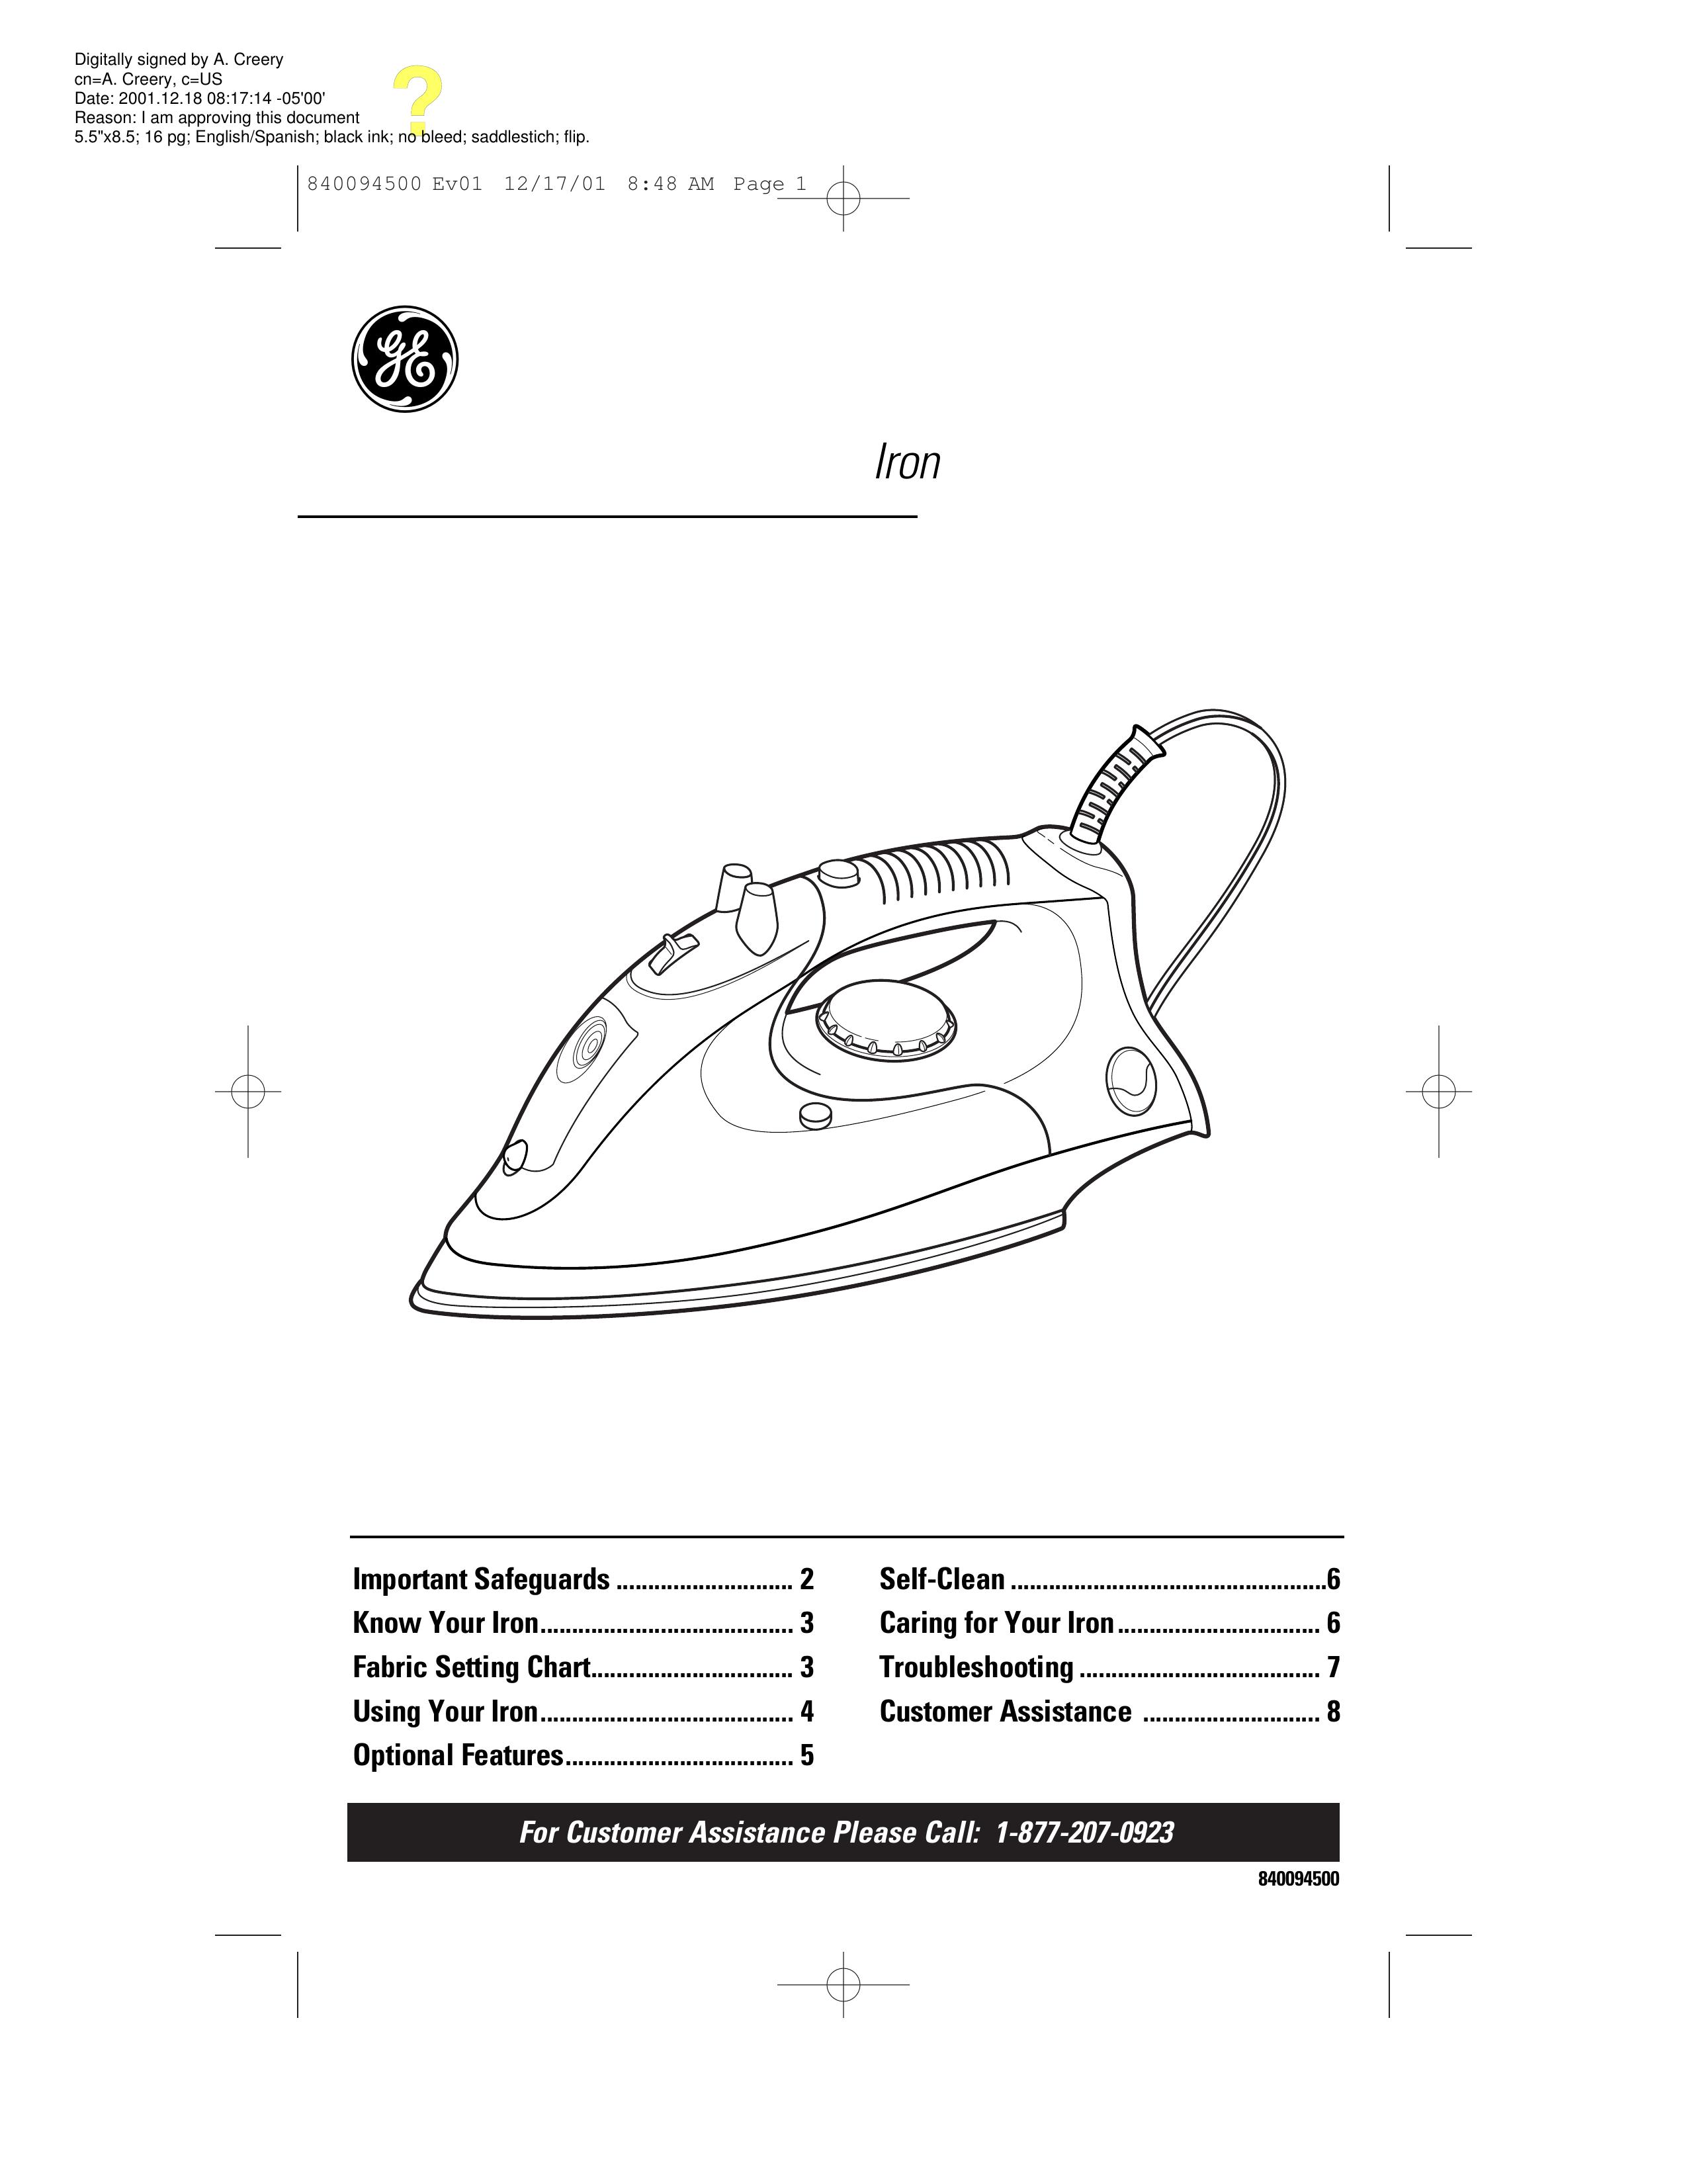 GE 840094500 Iron User Manual